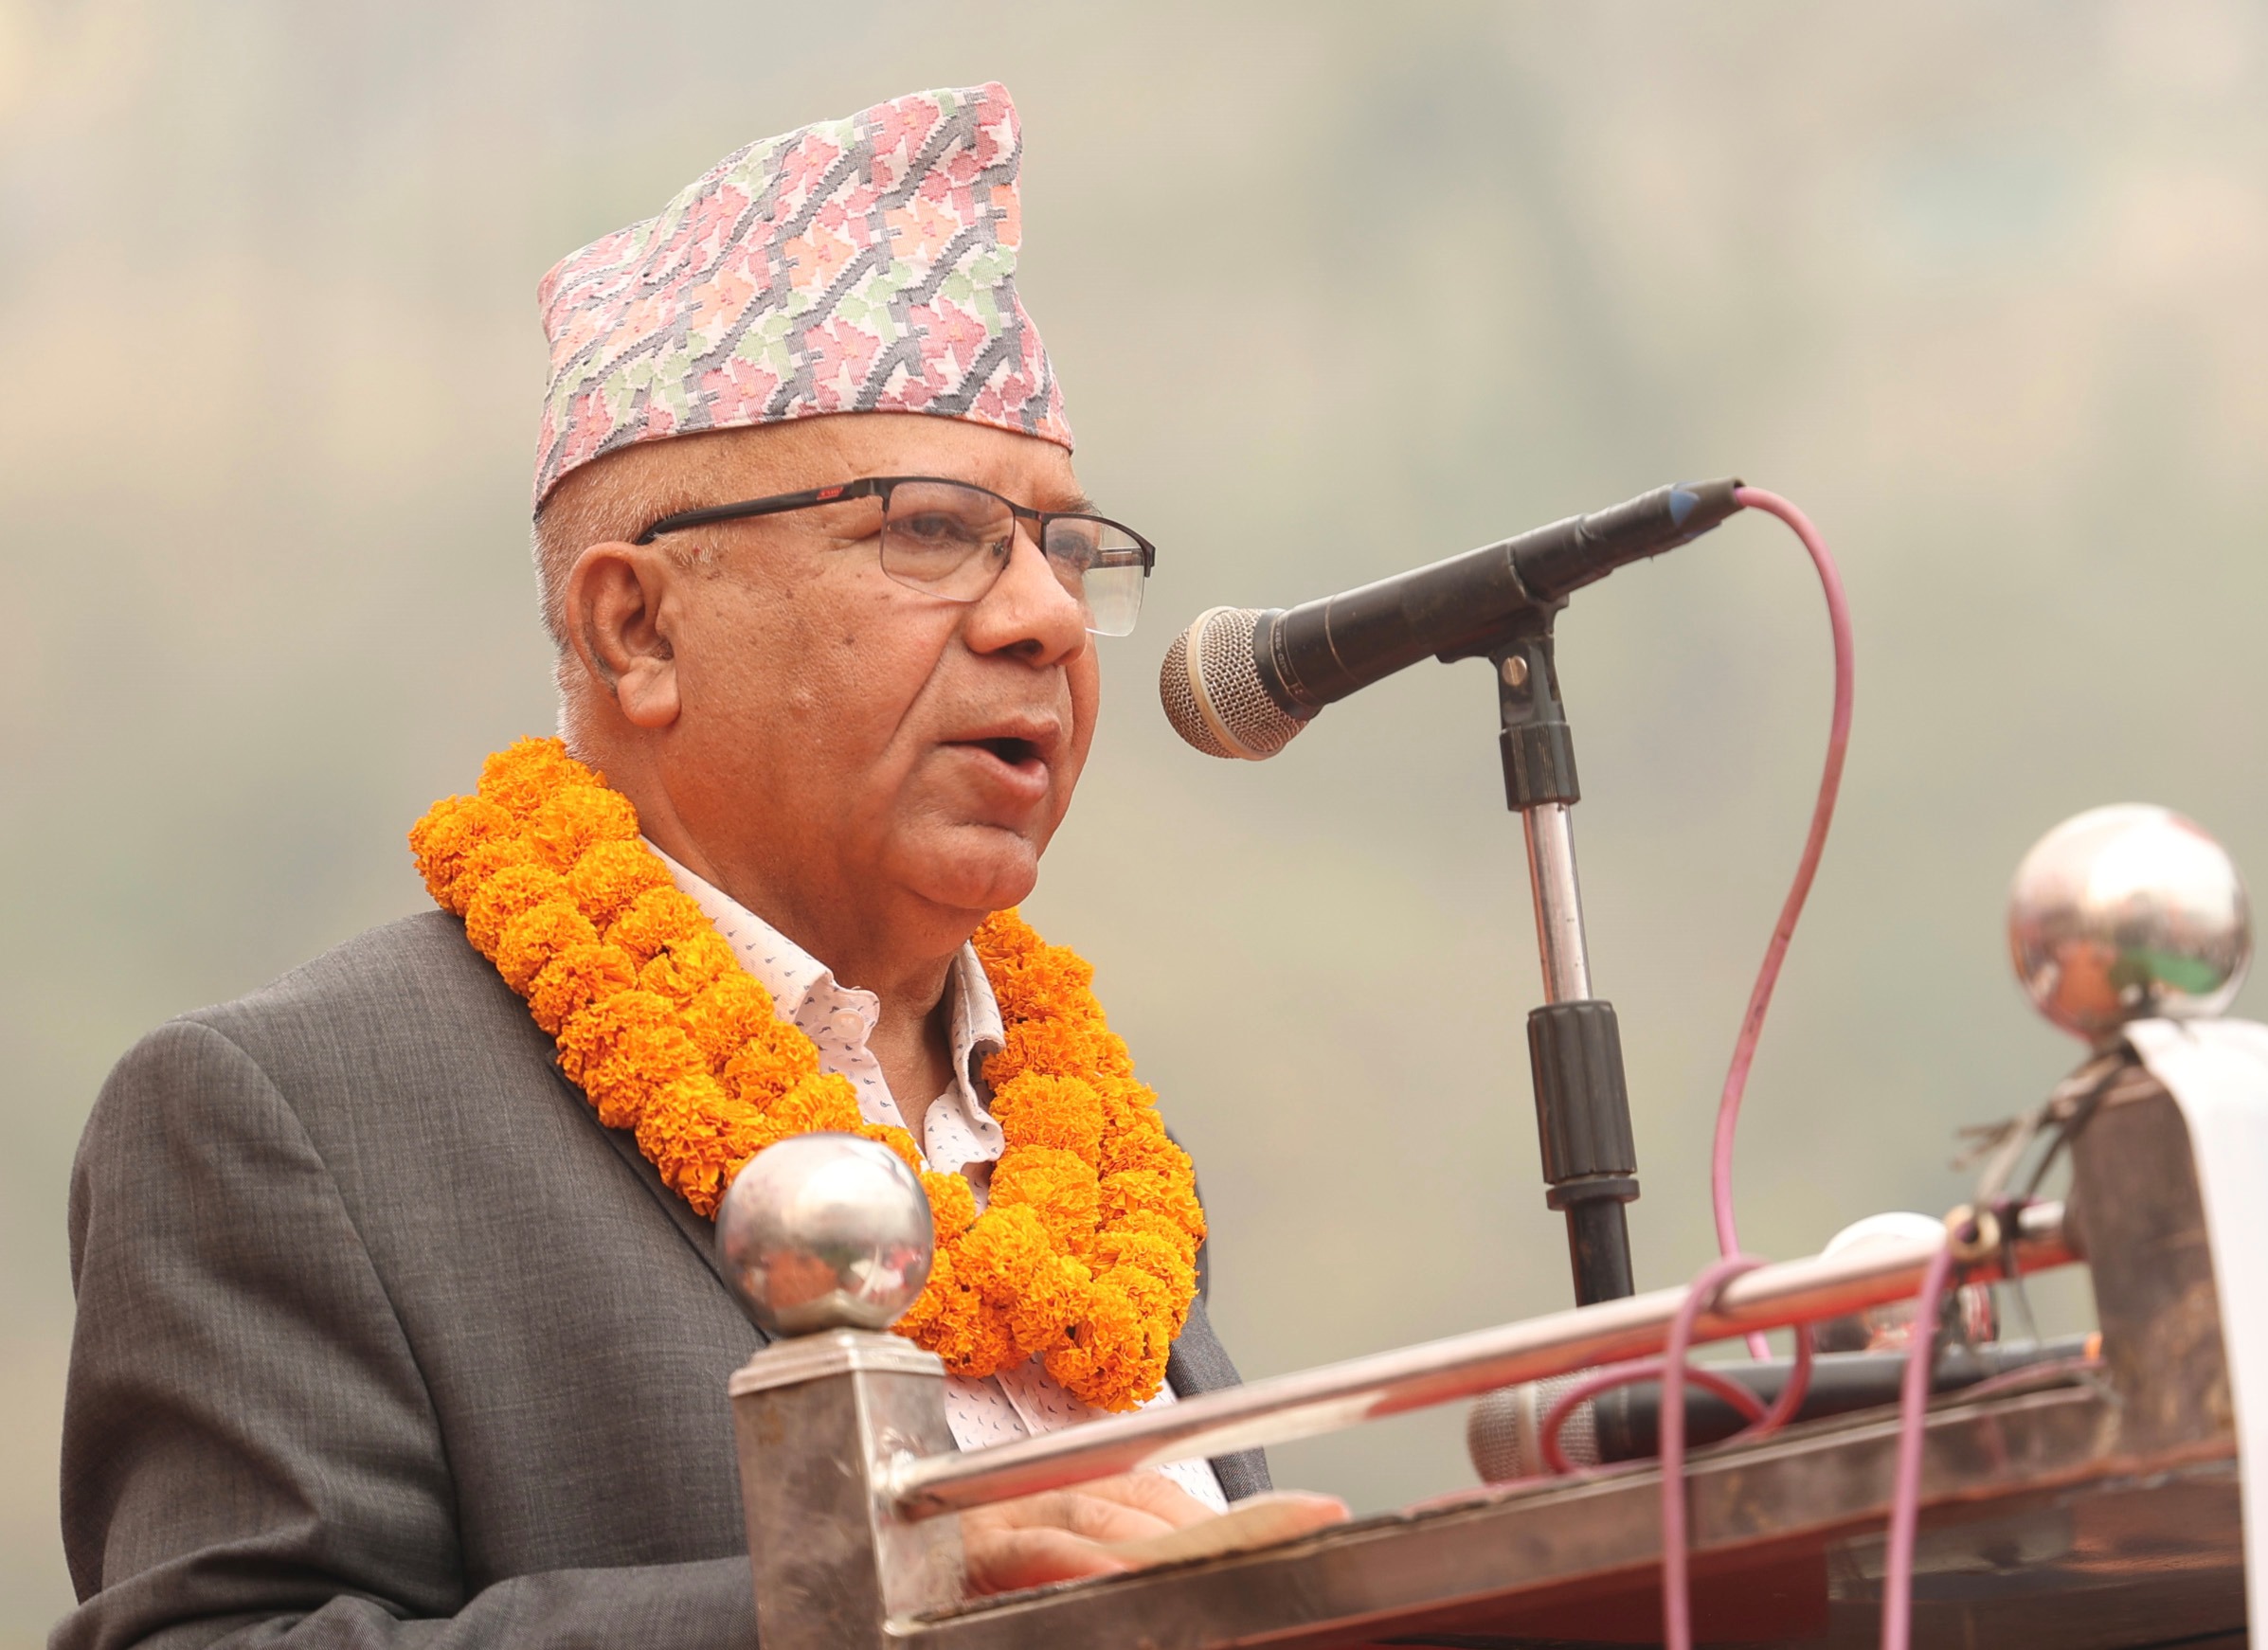 व्यवस्था र अवस्था बदलिएको छैन : माधव नेपाल